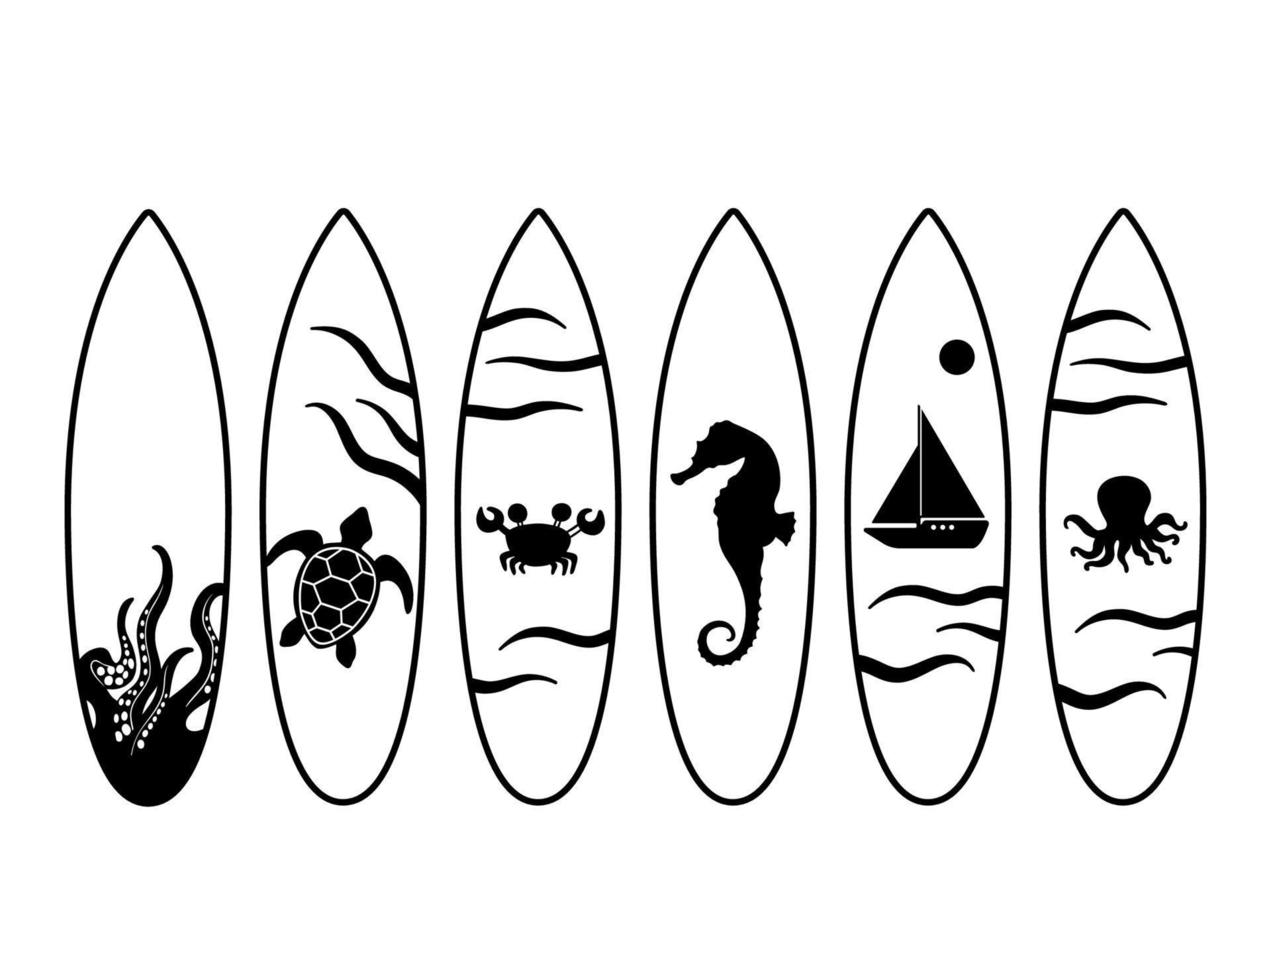 conjunto de pranchas de surf pretas com polvo, tartaruga, barco, desenho de cavalo-marinho. ilustração vetorial isolada no fundo branco vetor